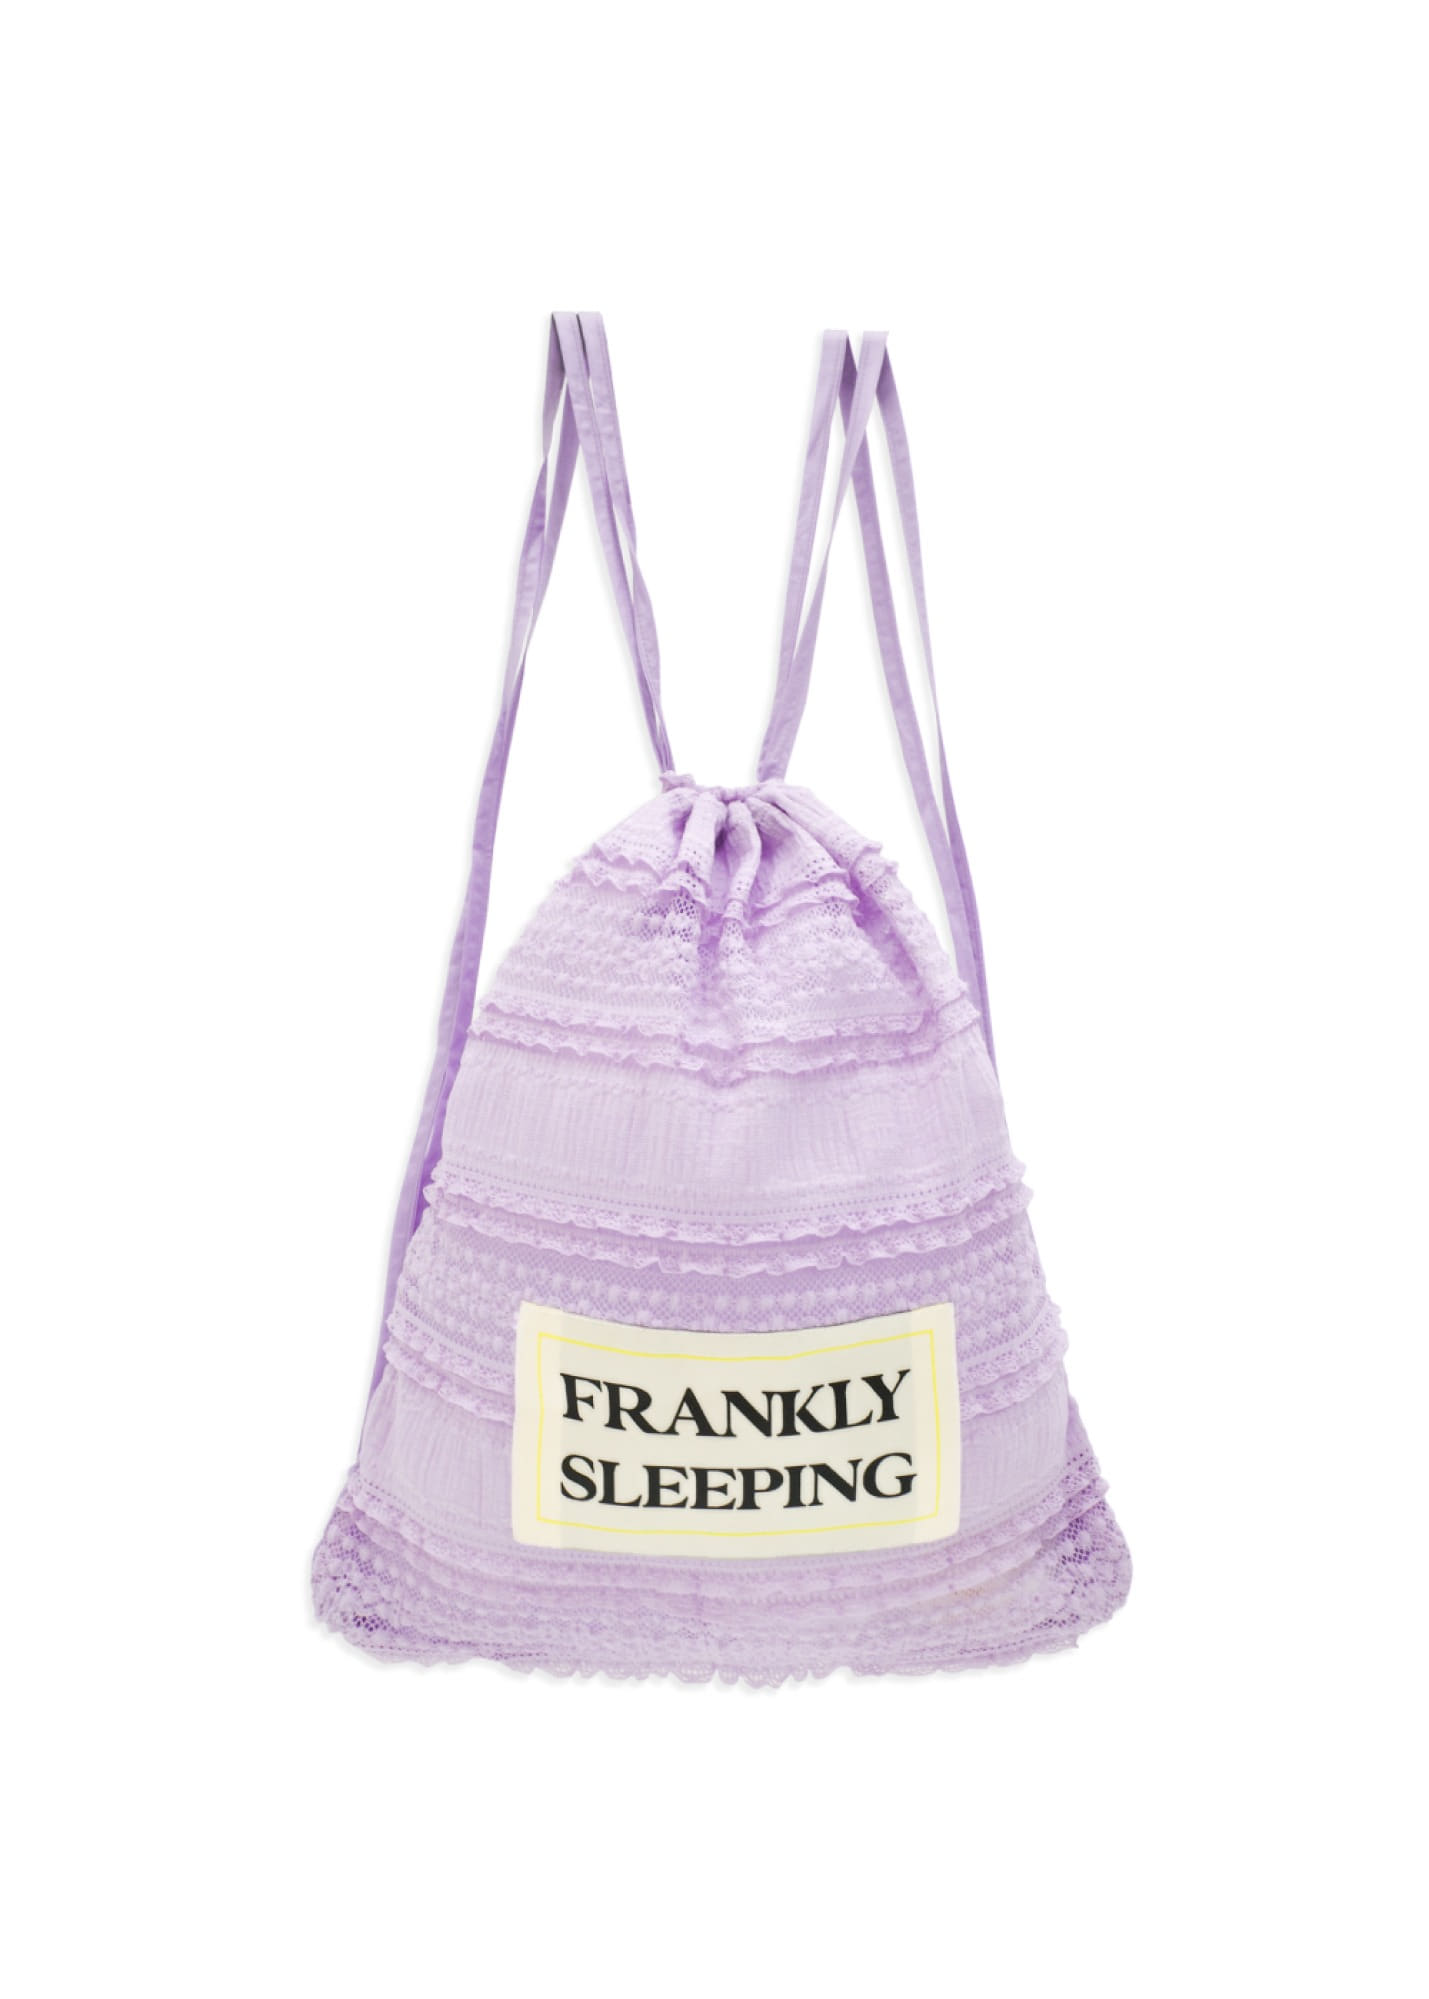 Frankly Sleeping String Bag, Lavender,FRANKLY